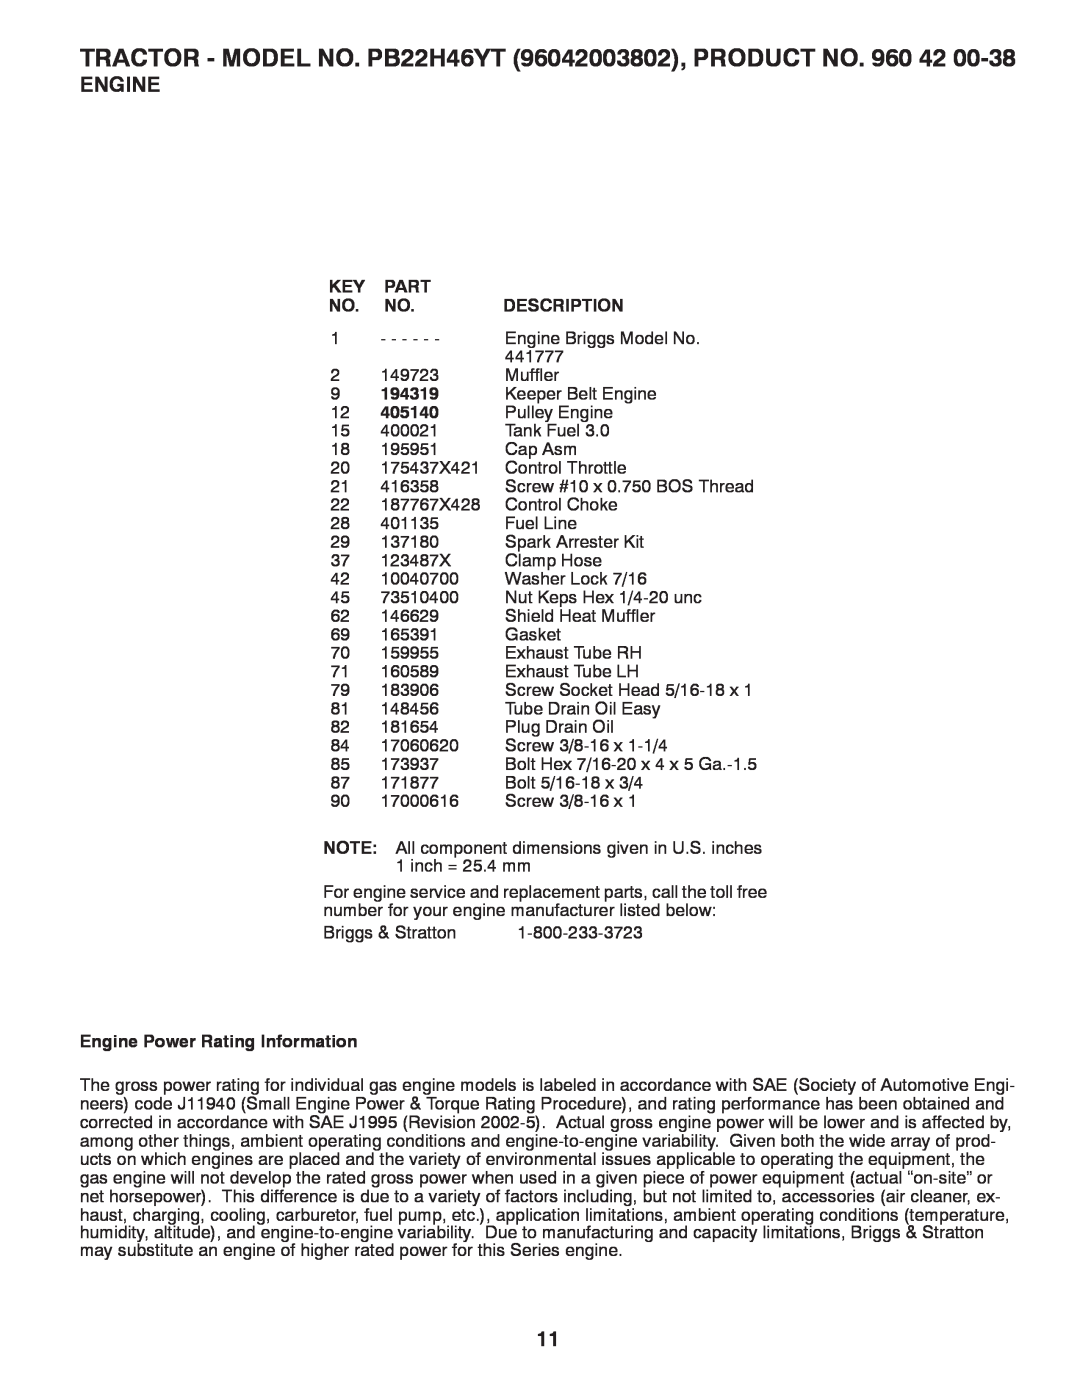 Poulan 960 42 00-38, 96042003802 manual Part, Description, 194319, 405140, Engine Power Rating Information 